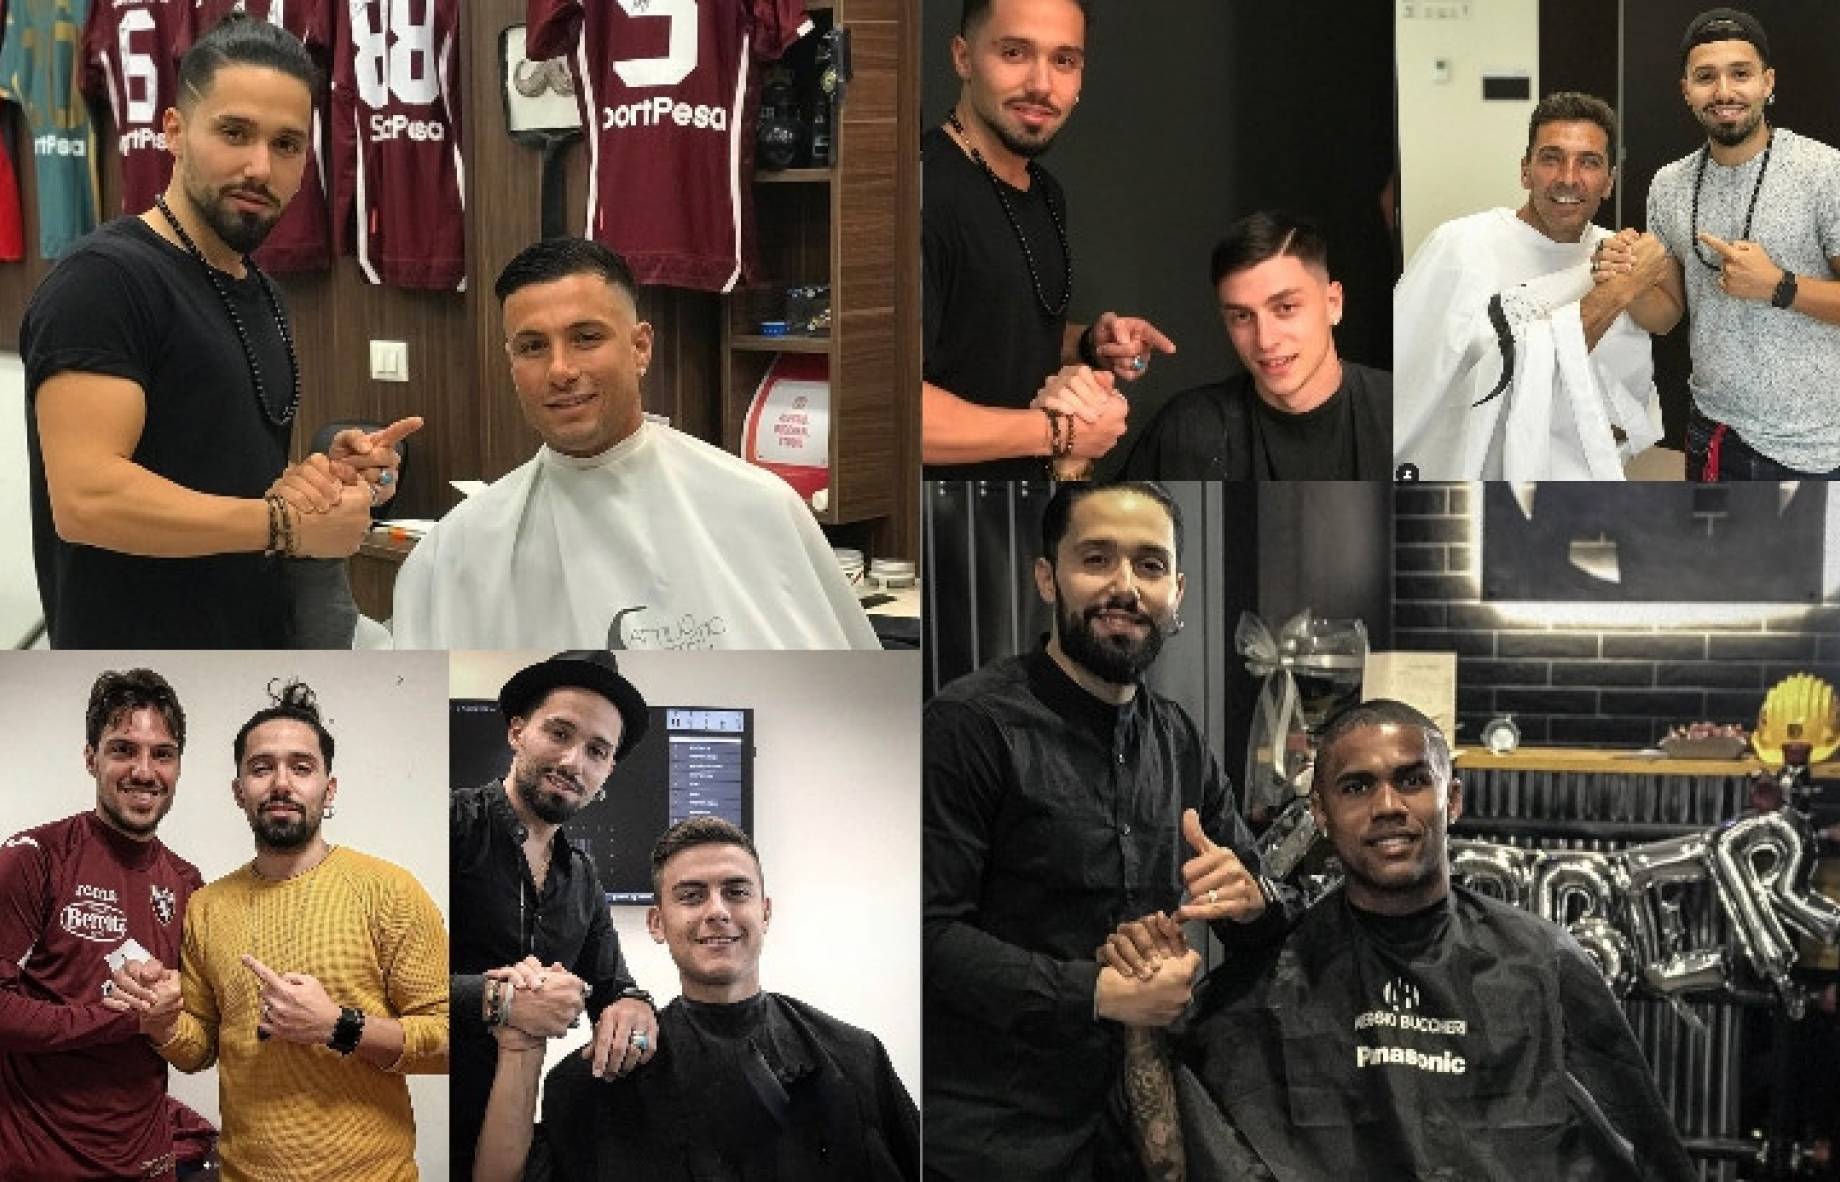 barbiere_derby_torino_collage_gdm